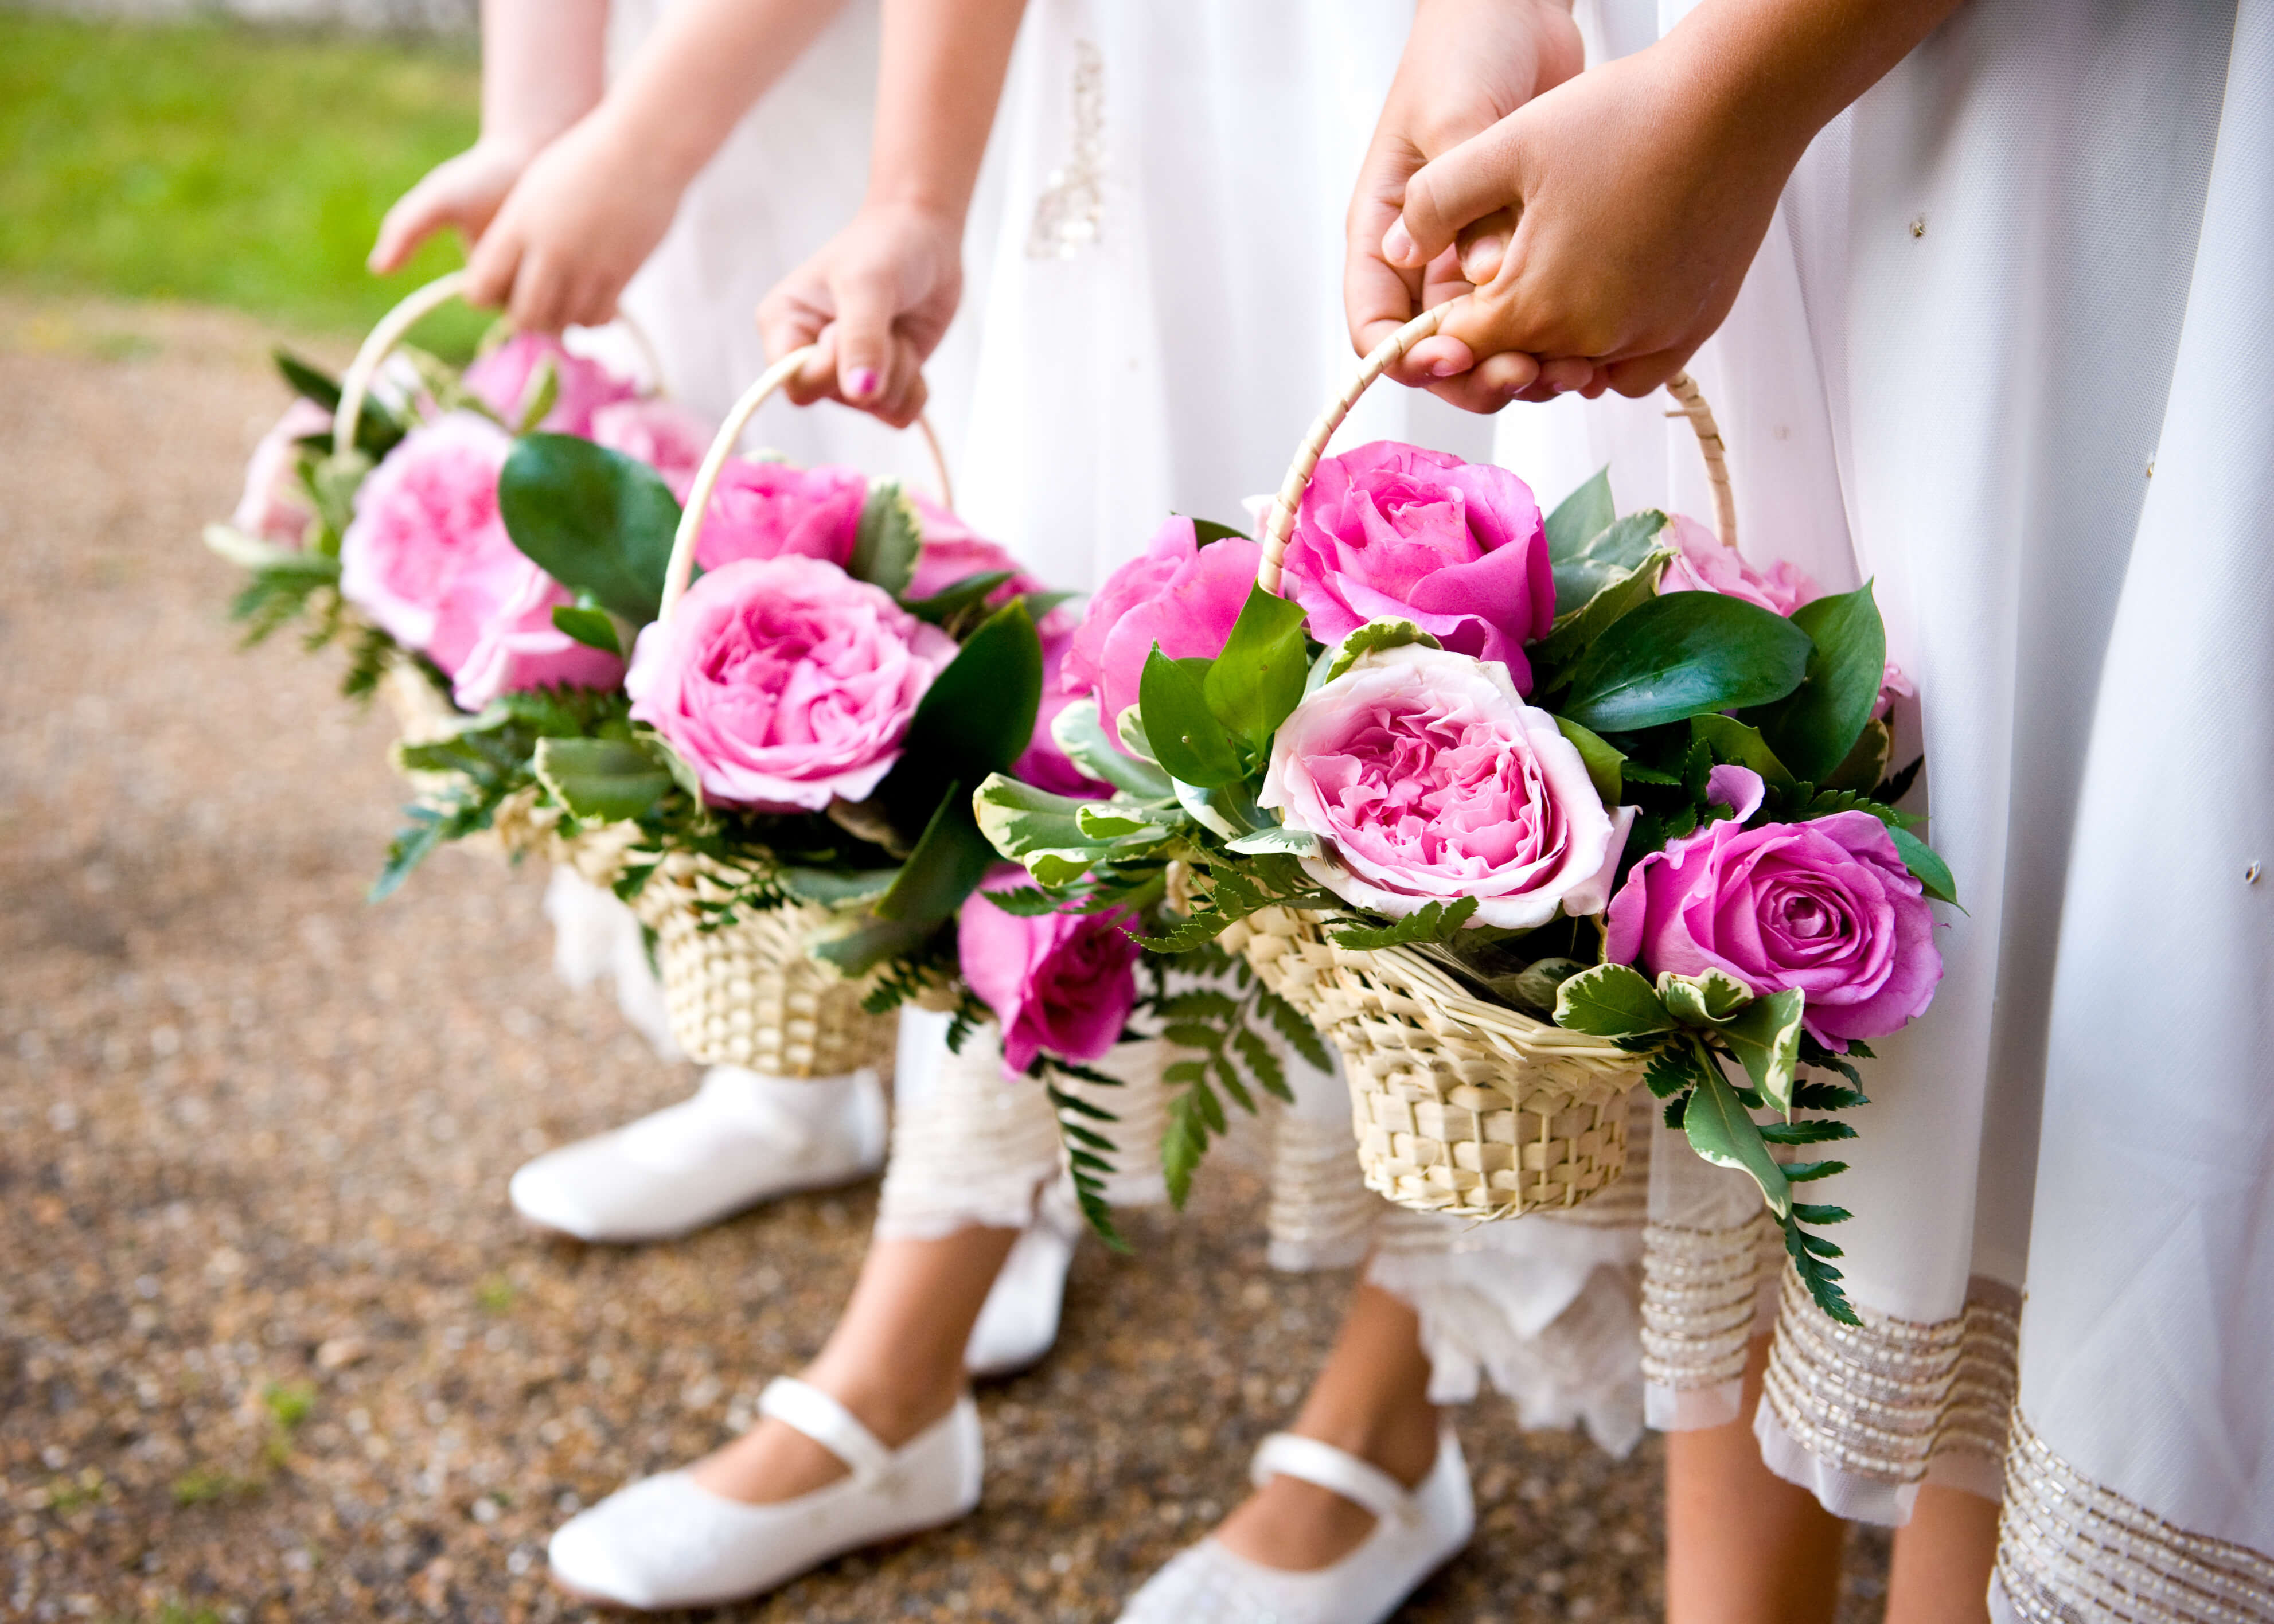 Blumen Streuen Hochzeit
 Blumenkinder auf der Hochzeit